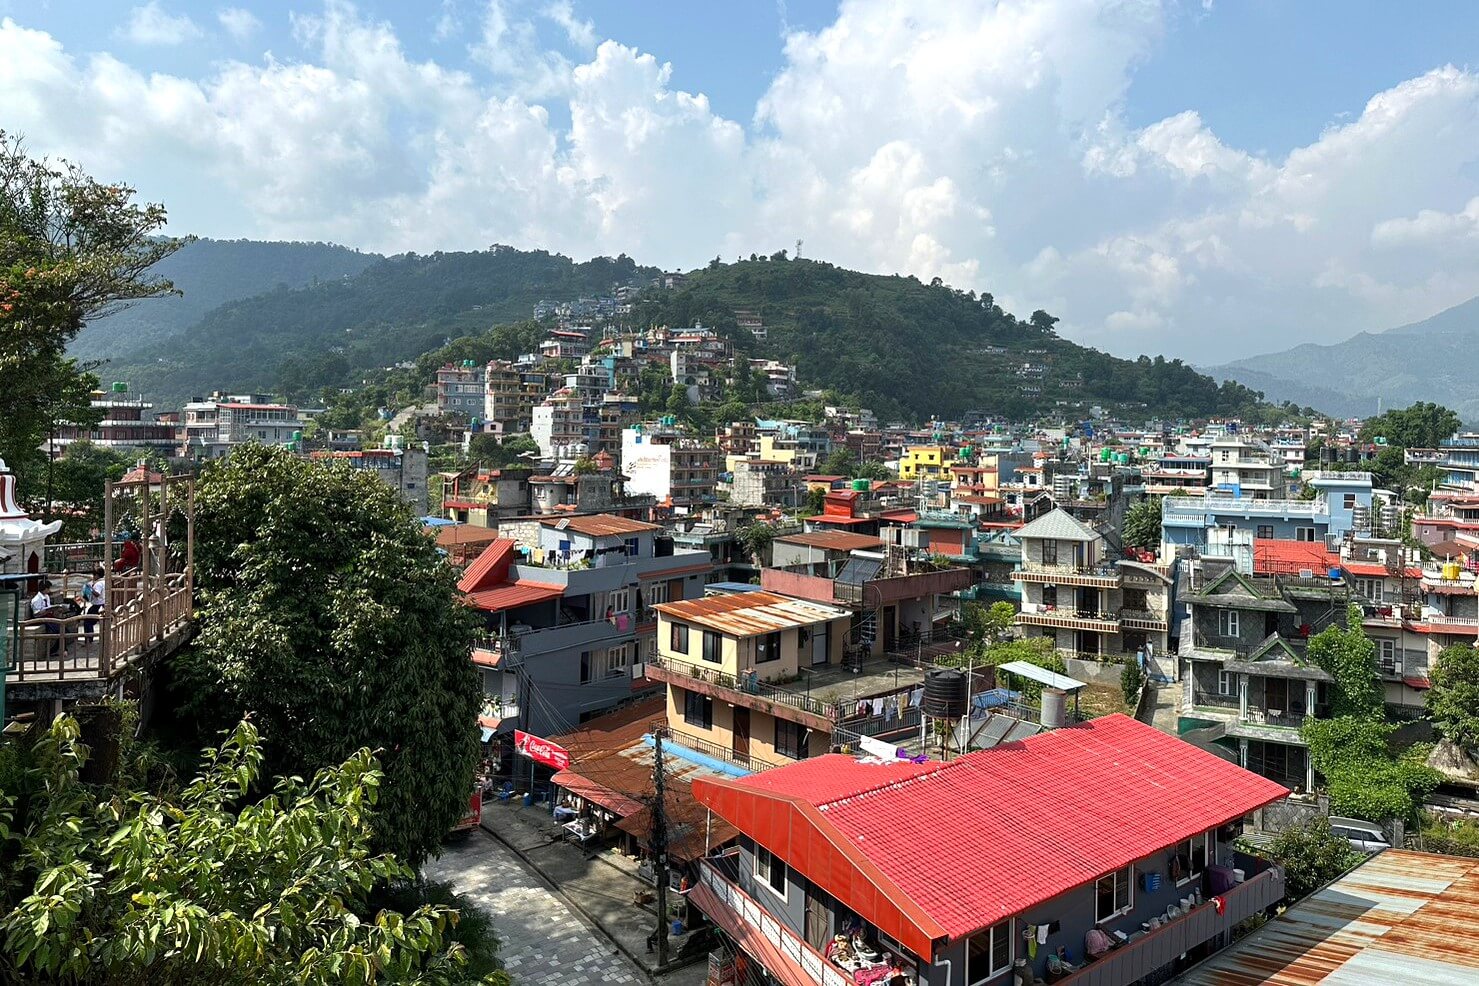 Pokhara REVIEW|ポカラ お客様の声